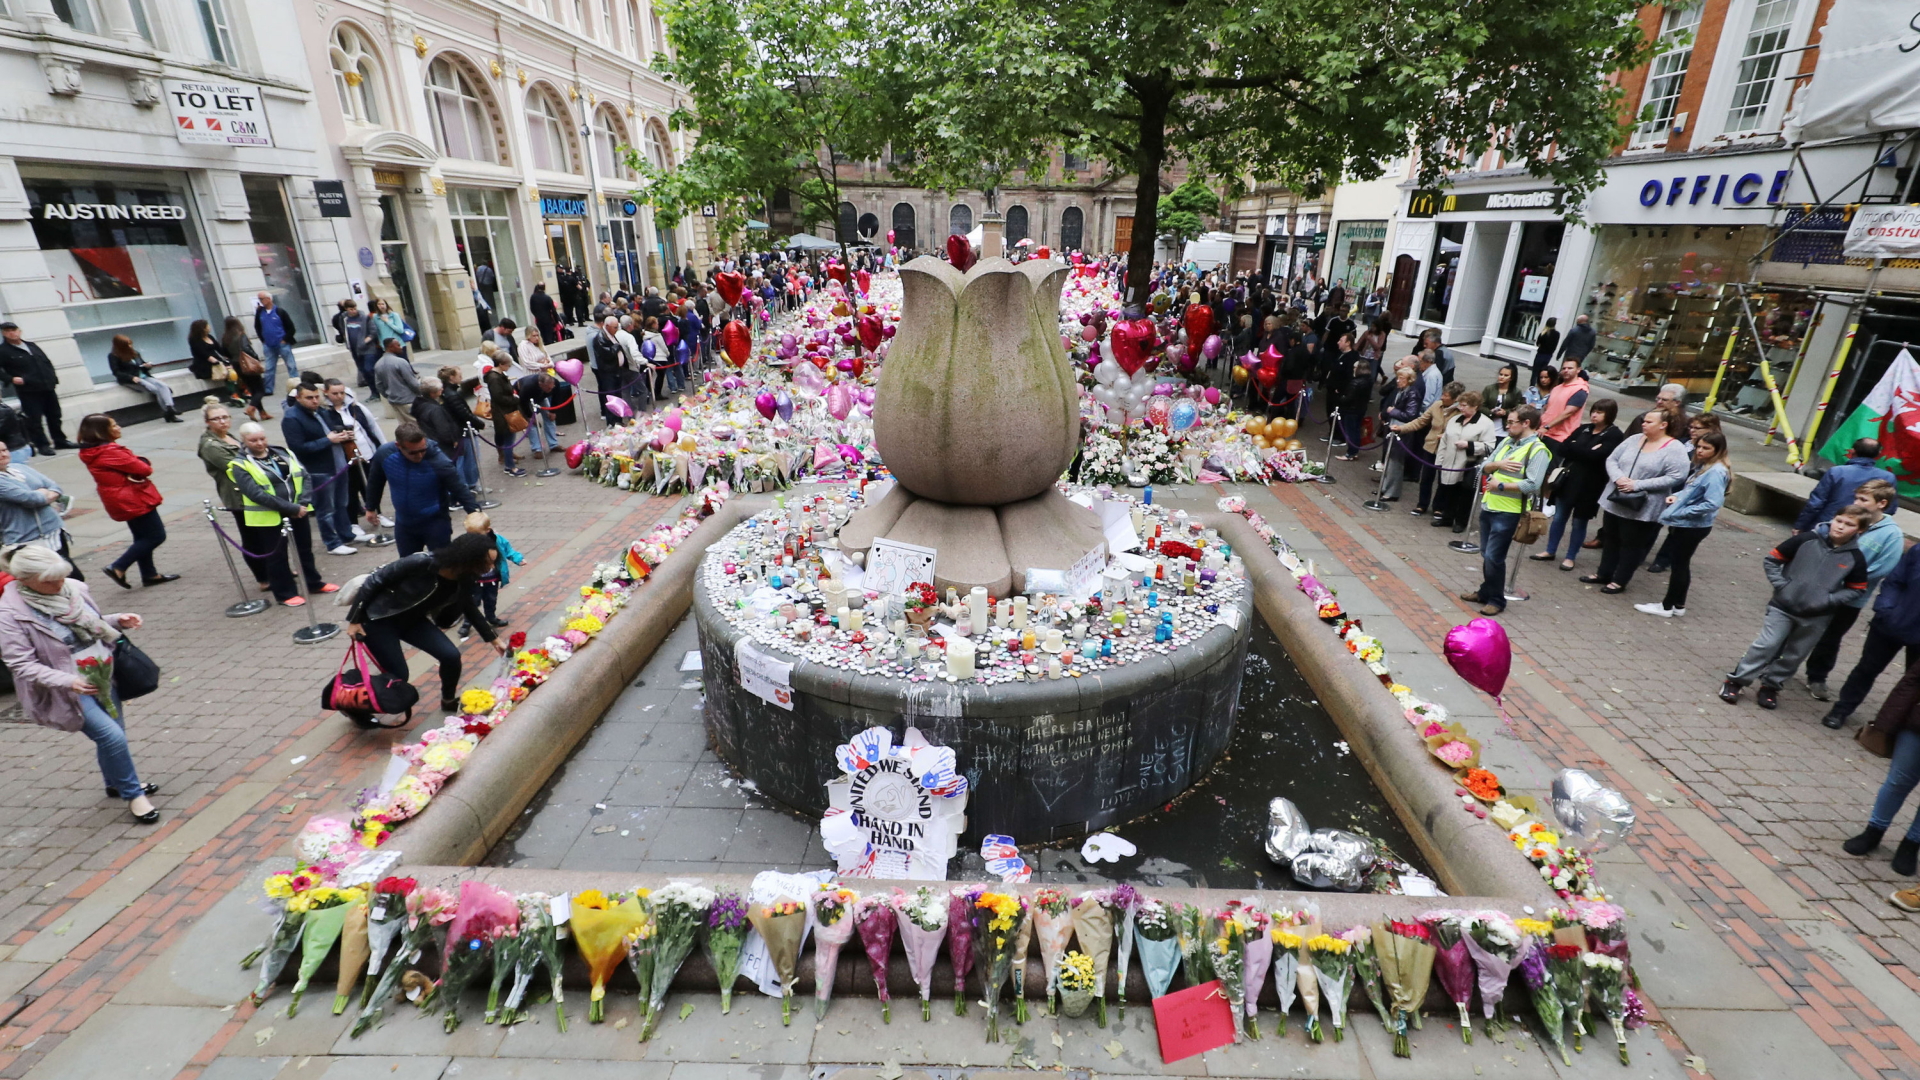 Nach dem Anschlag von Manchester legen Menschen Blumen für die Opfer nieder.  | Bildquelle: dpa